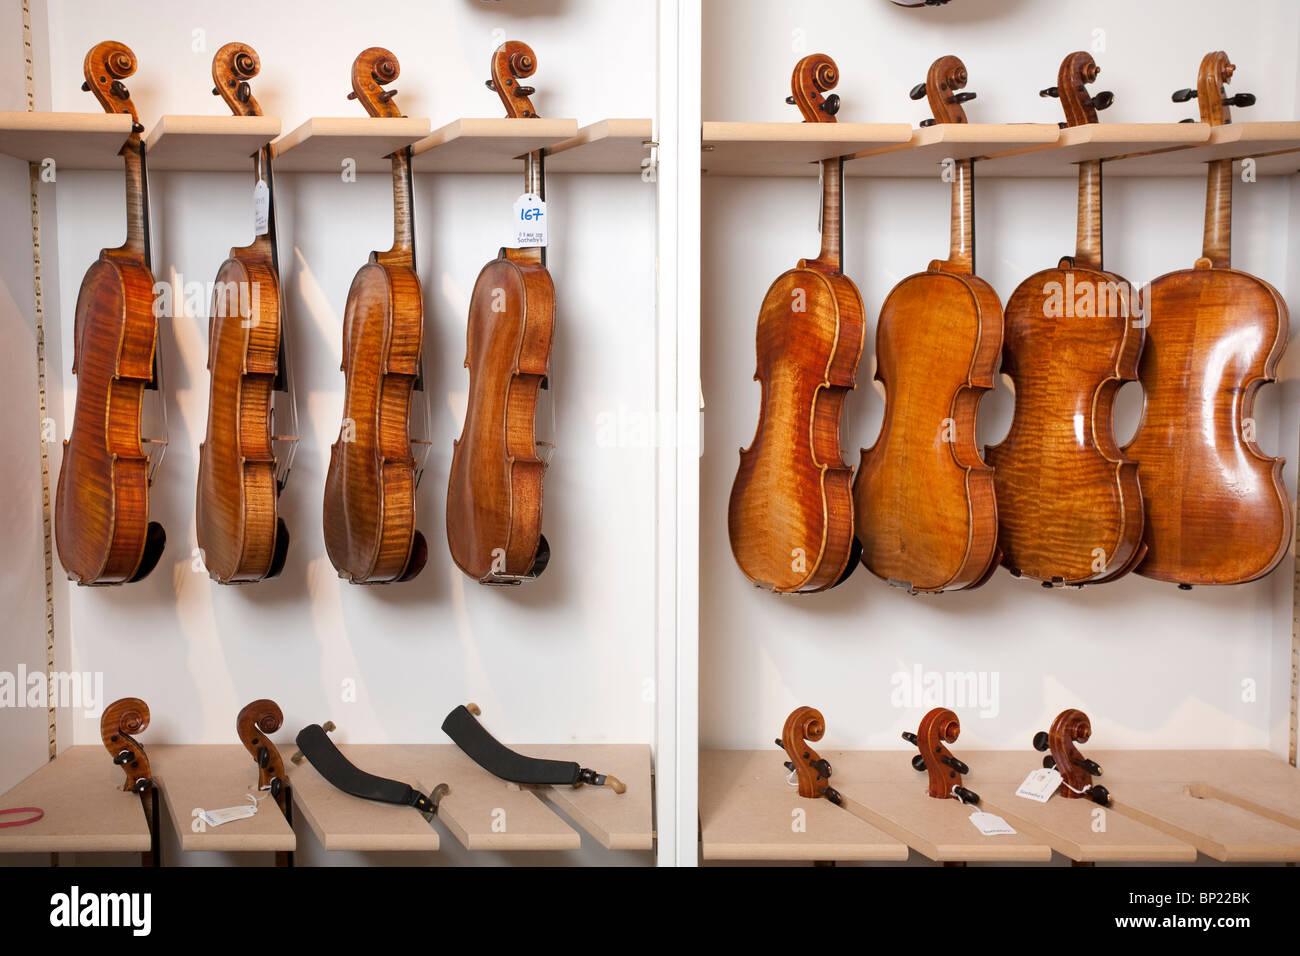 Violines clásicos a la espera de ser subastada en Sotheby's en Bond Street, Londres, Reino Unido. Foto:Jeff Gilbert Foto de stock